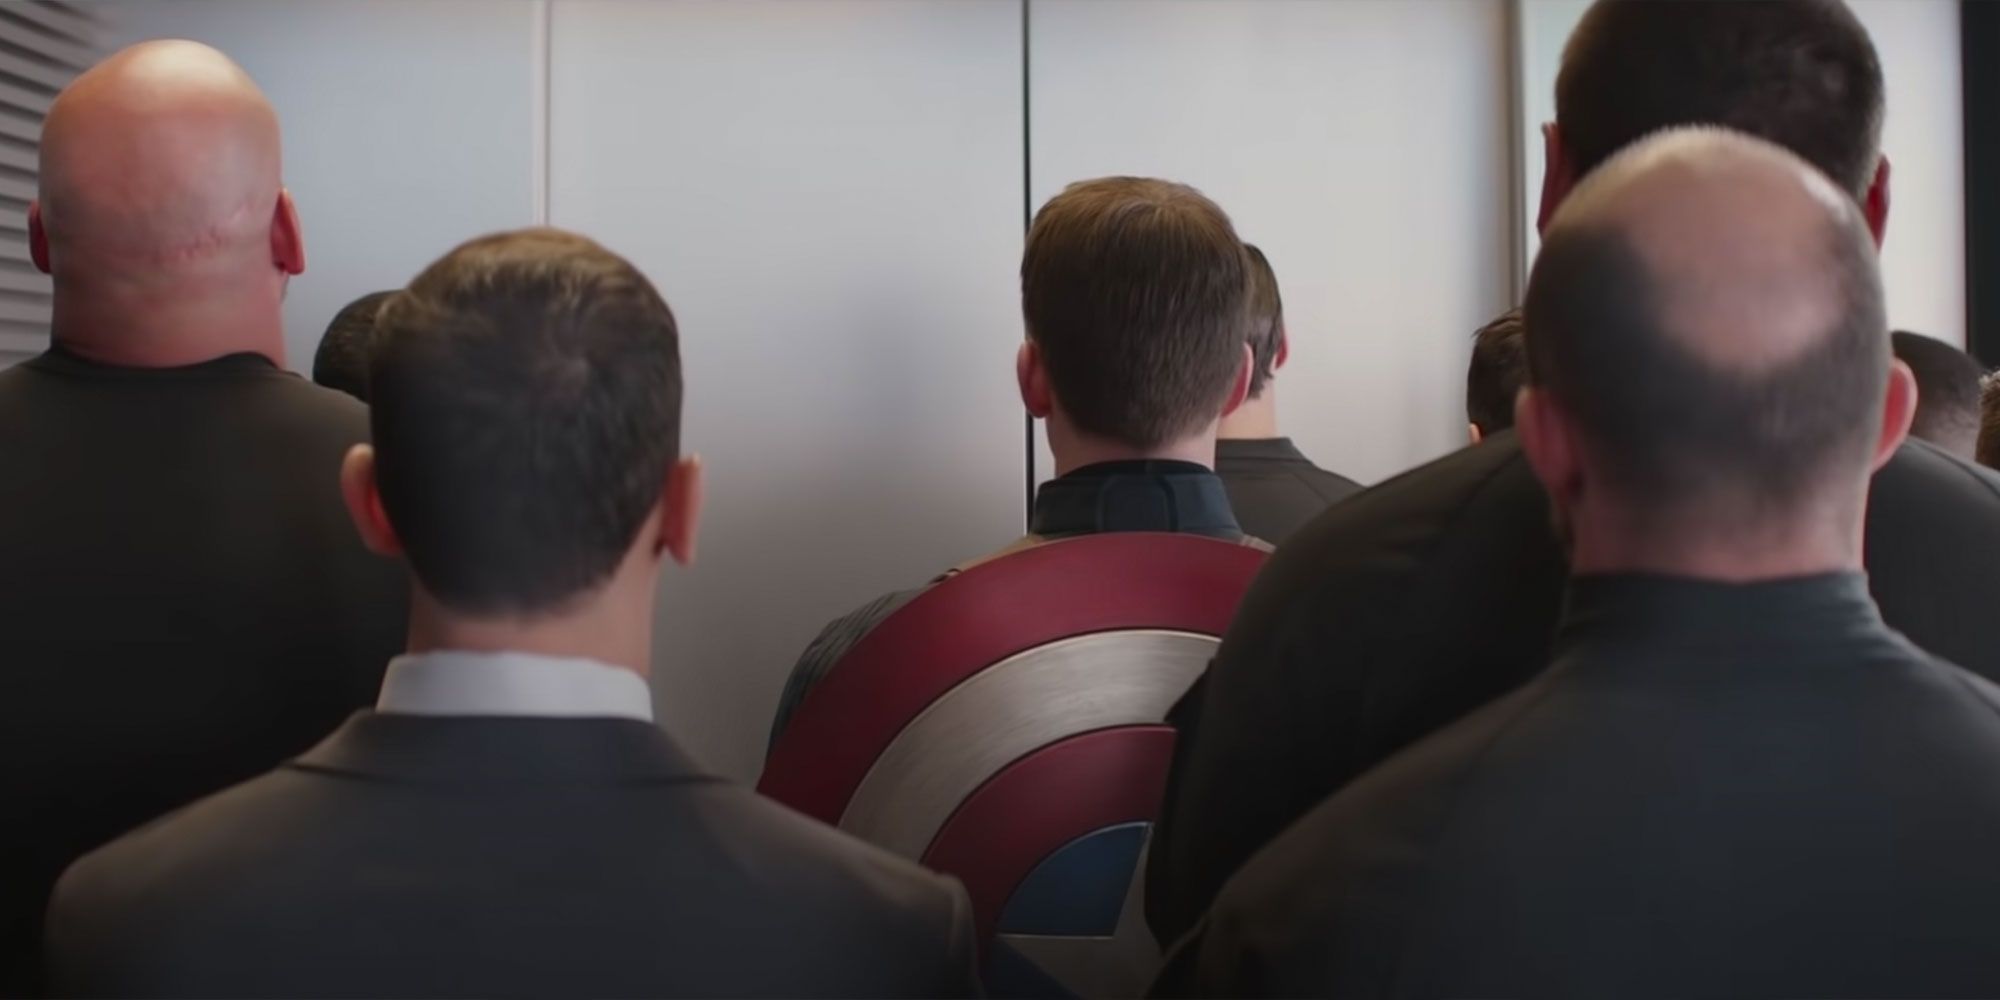 Elevator fight scene in Captain America: The Winter Soldier